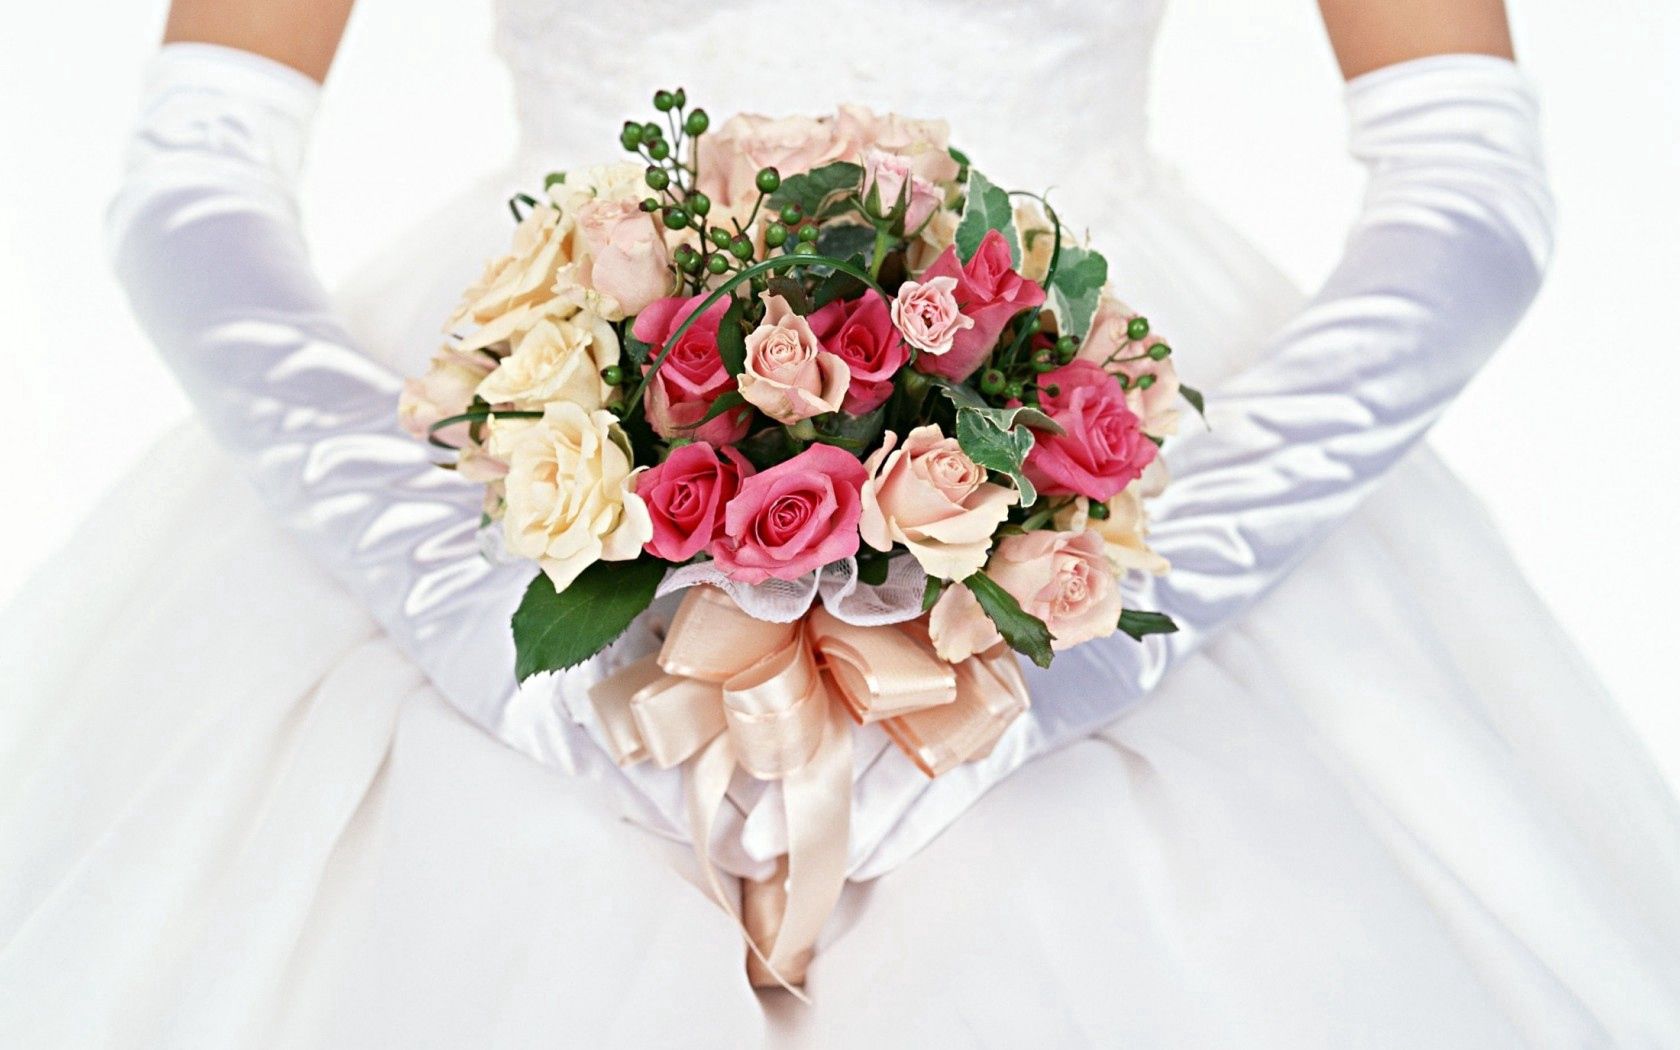 roses, miscellanea, miscellaneous, bouquet, gloves, bride